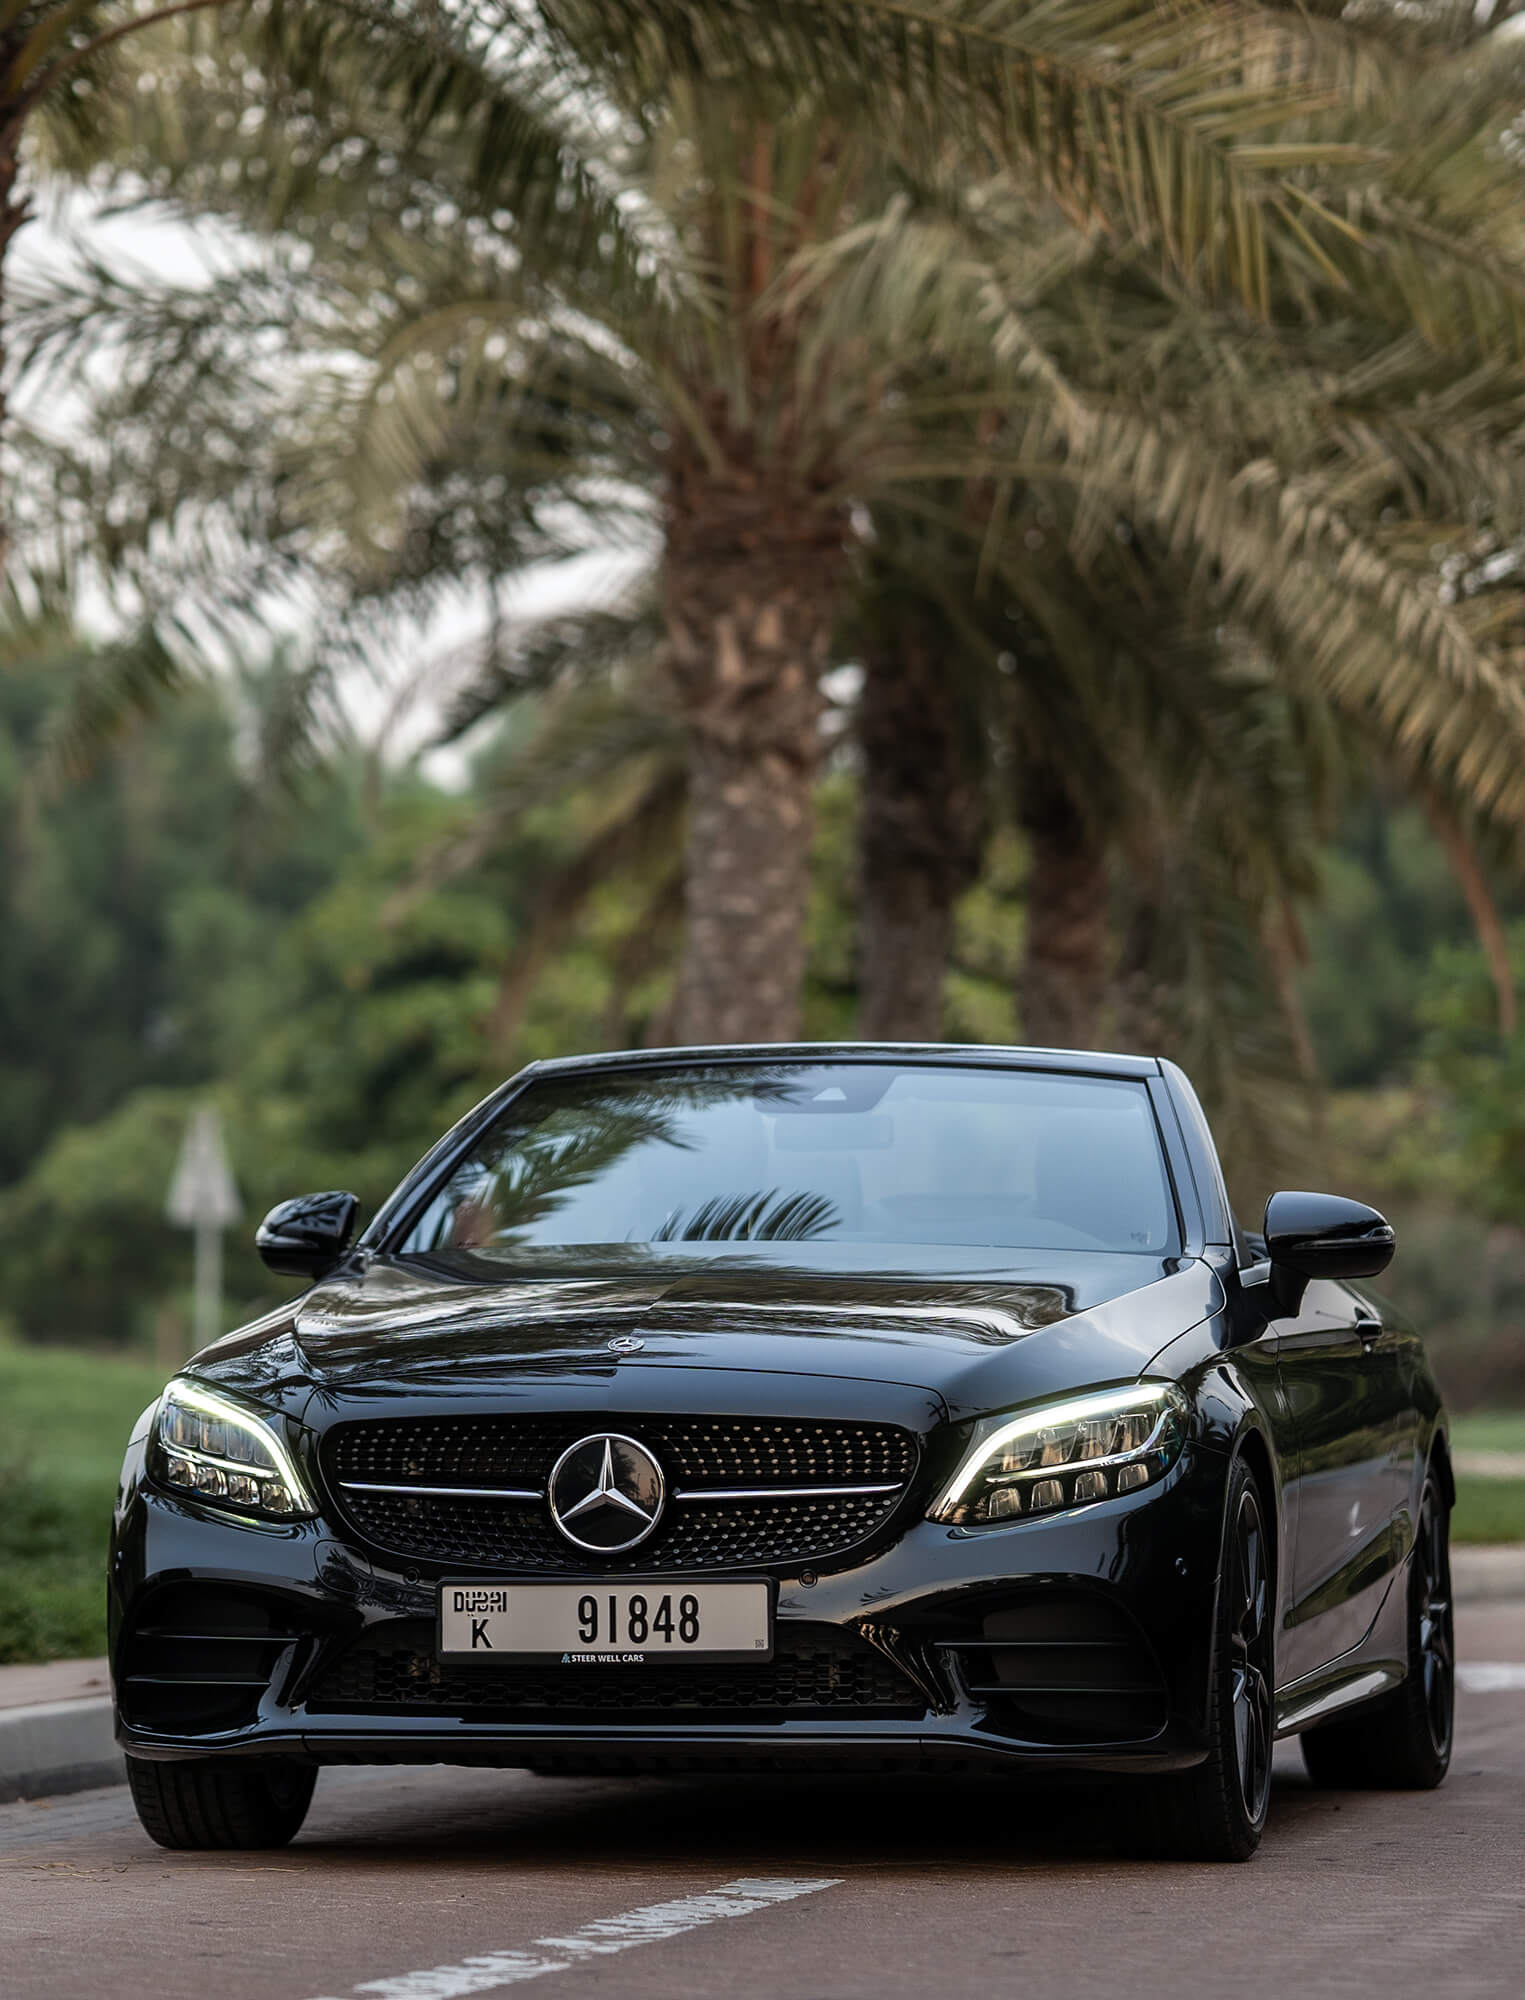 Louez une Mercedes Classe C à Dubaï